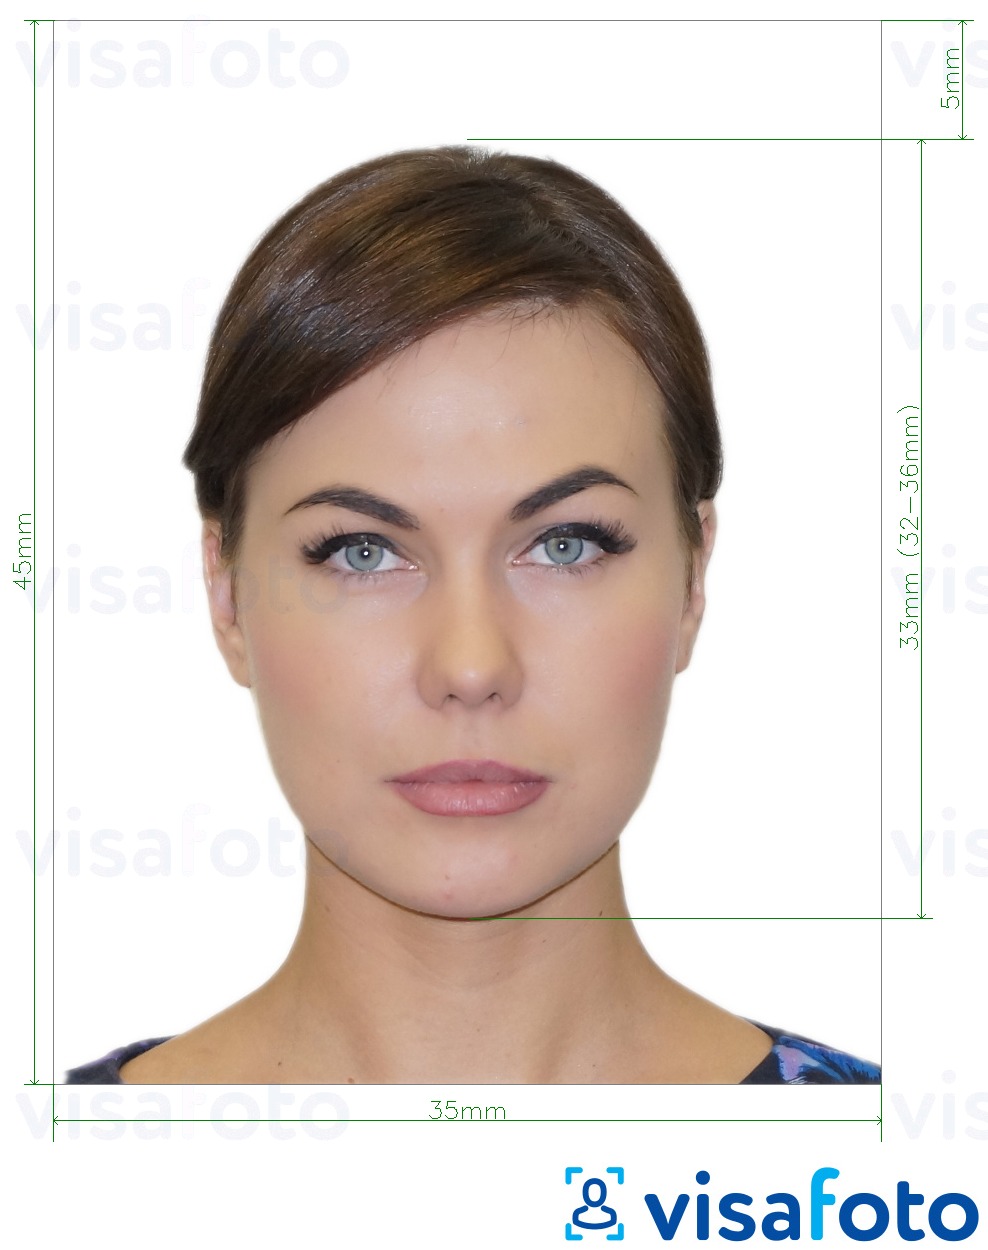 俄罗斯风扇ID 像素 的标准尺寸照片示例